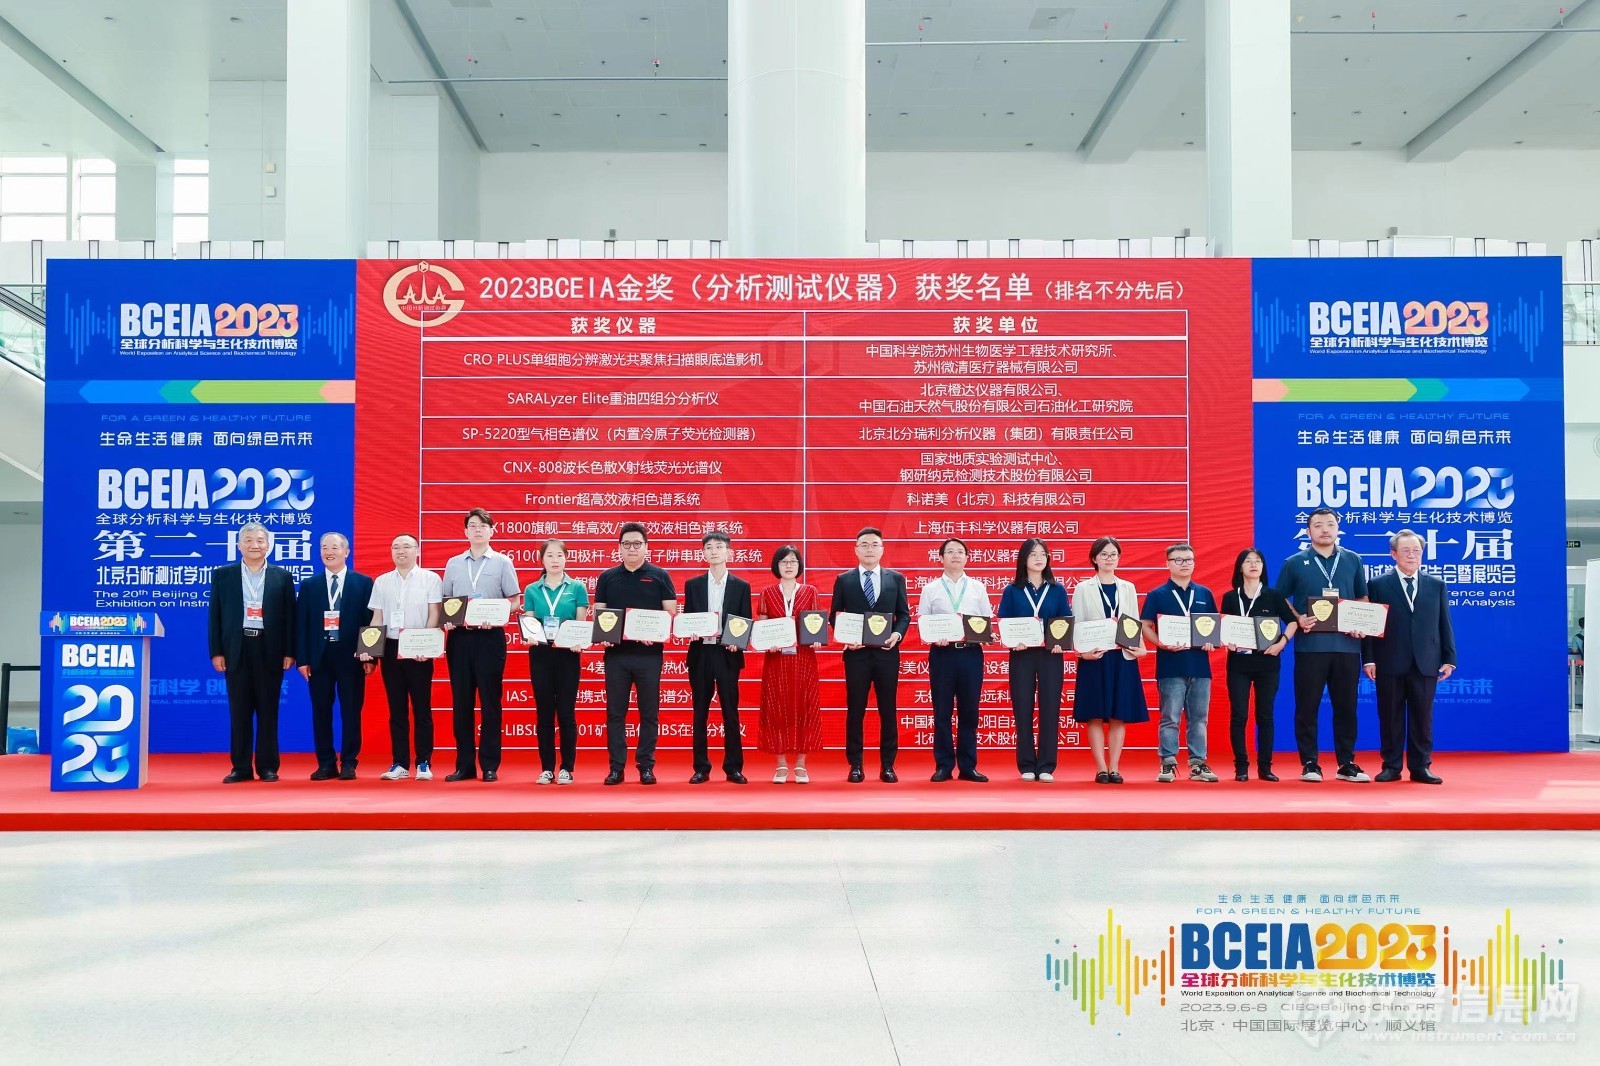 BCEIA 2023在京盛大开幕 观分析科学与生化技术盛会 